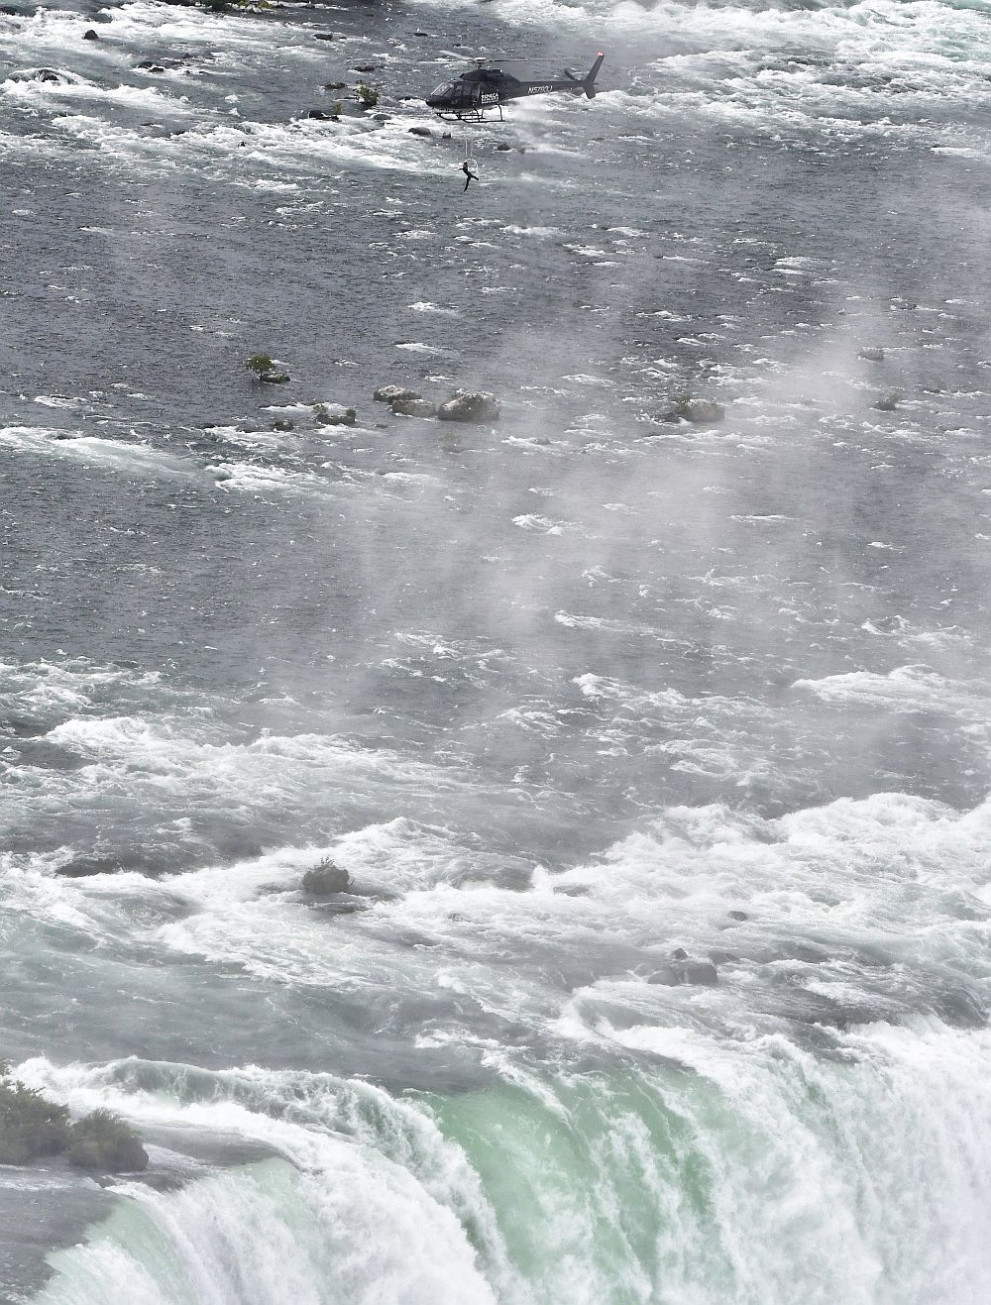  Въздушната акробатка Еръндира Валенда мина сполучливо над Ниагарския водопад 